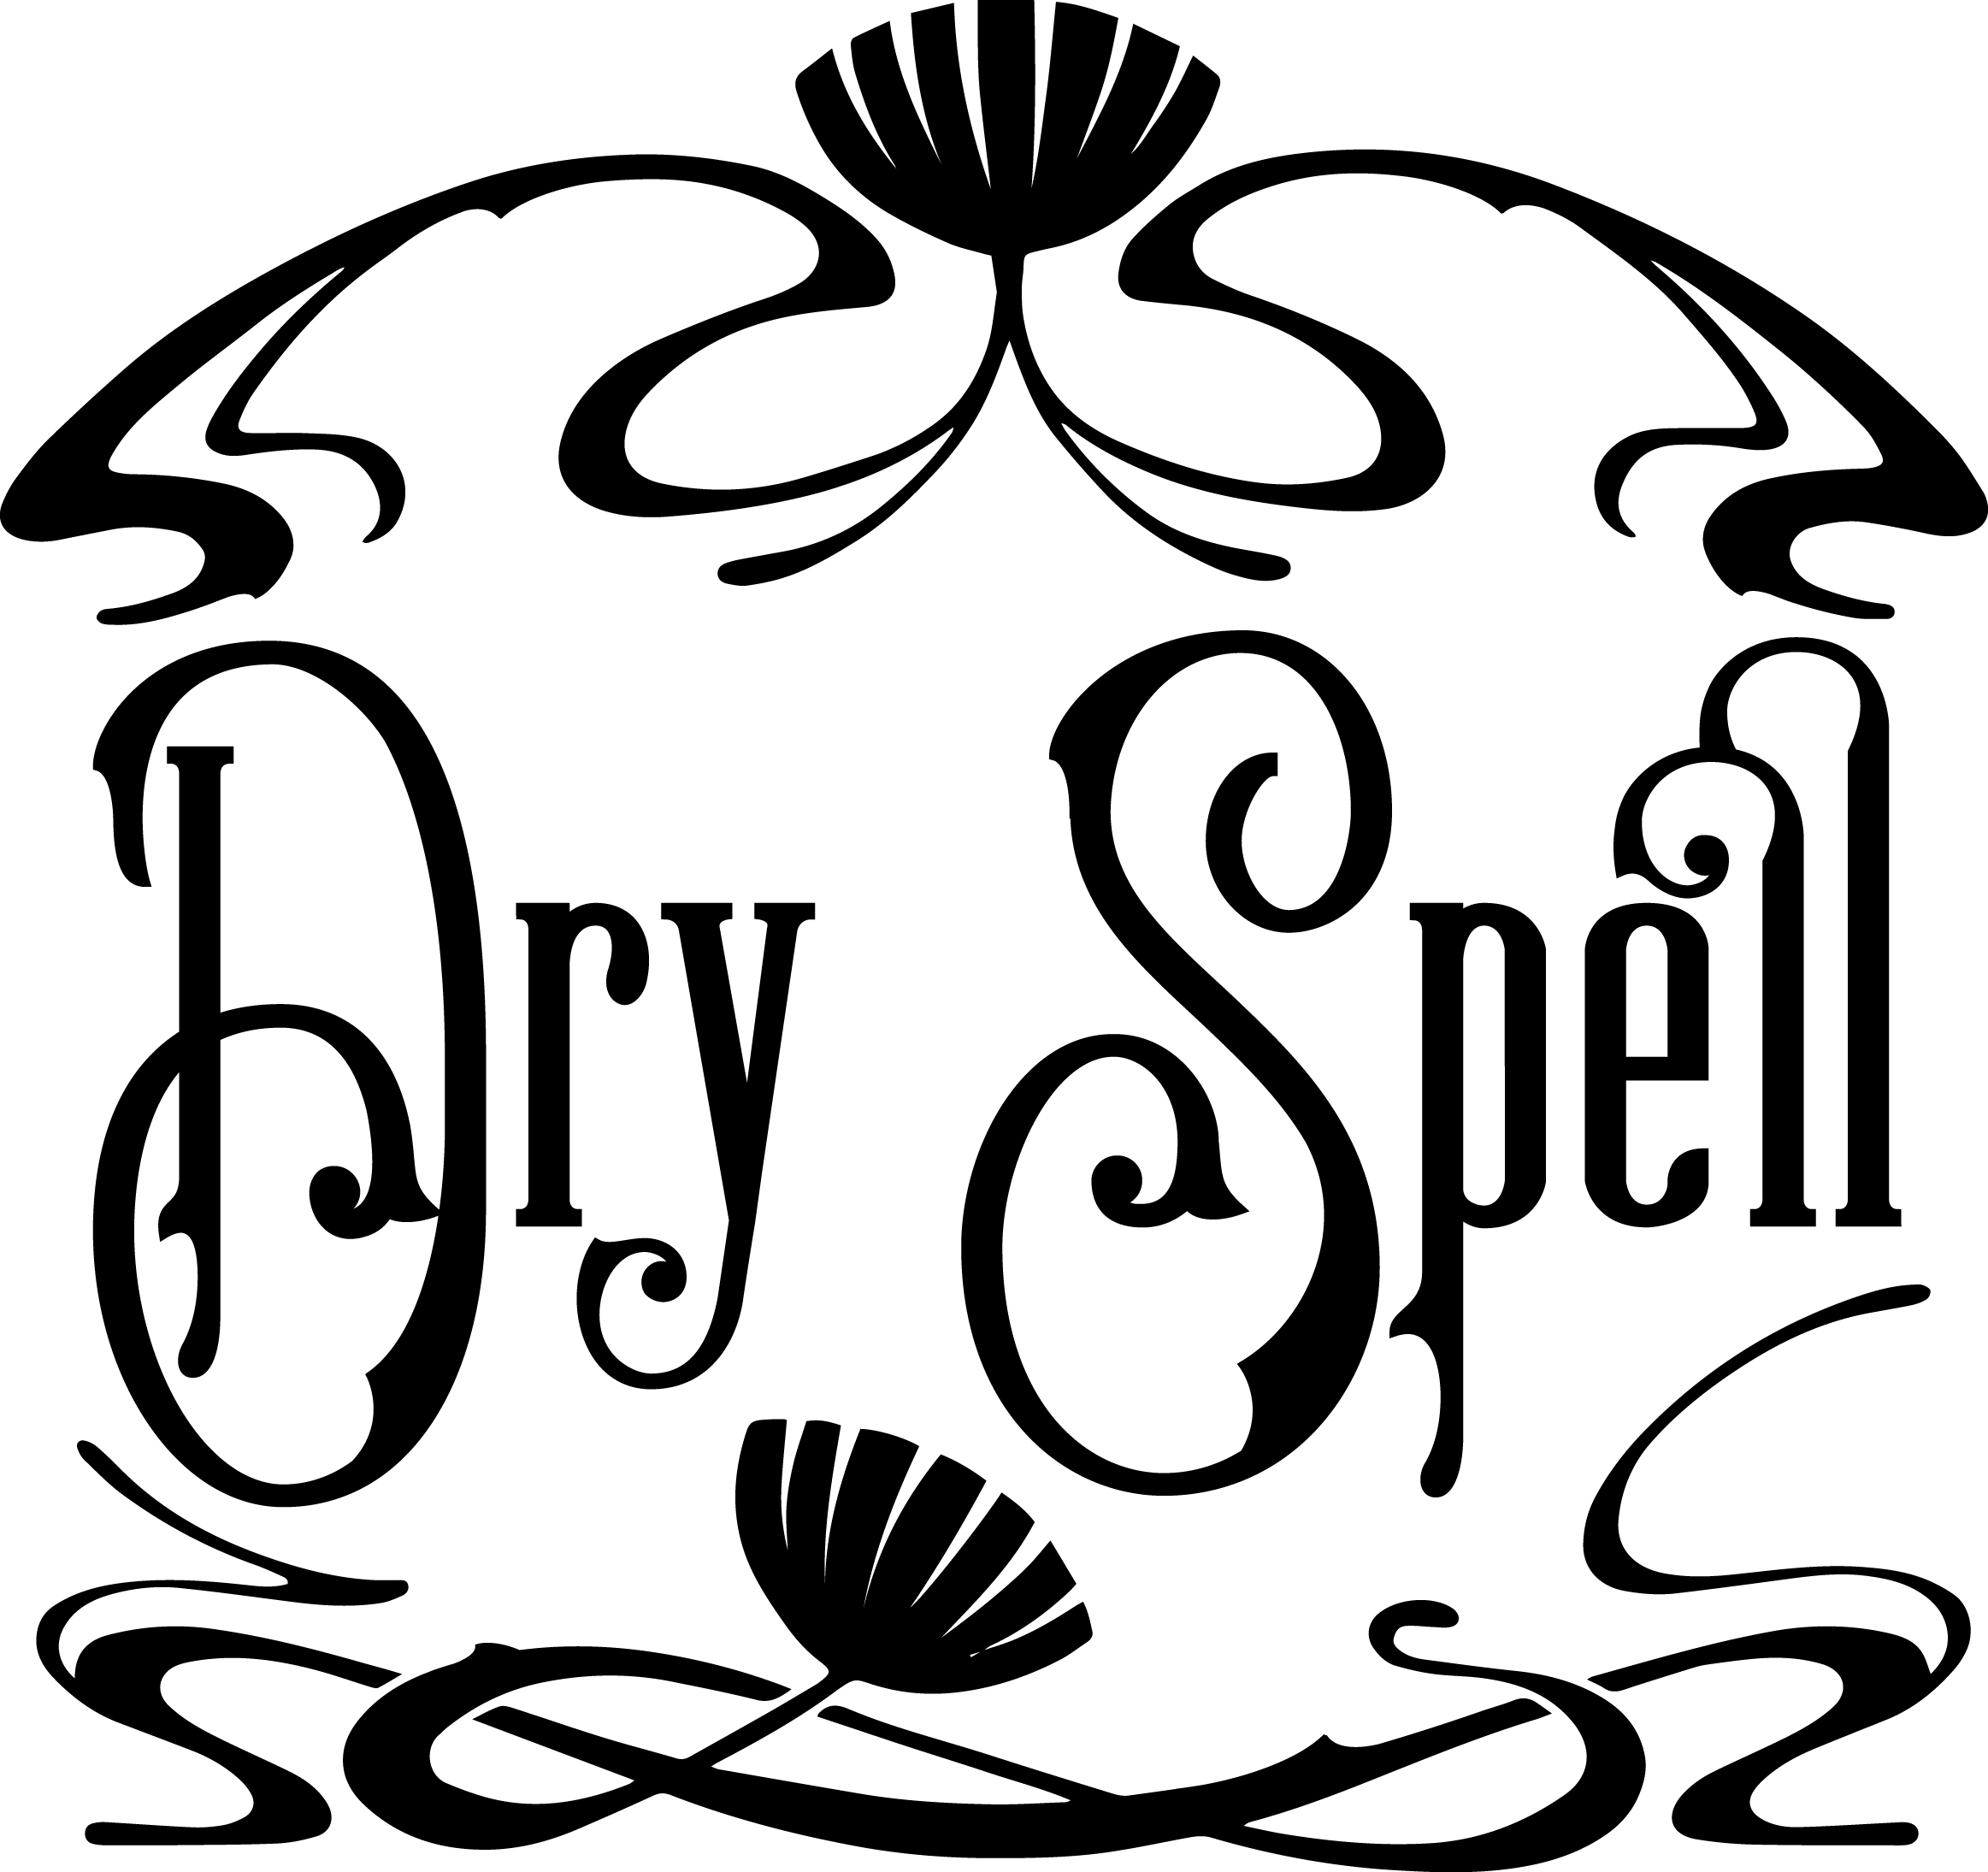 Dry Spell Salon | Salt Lake City, Utah